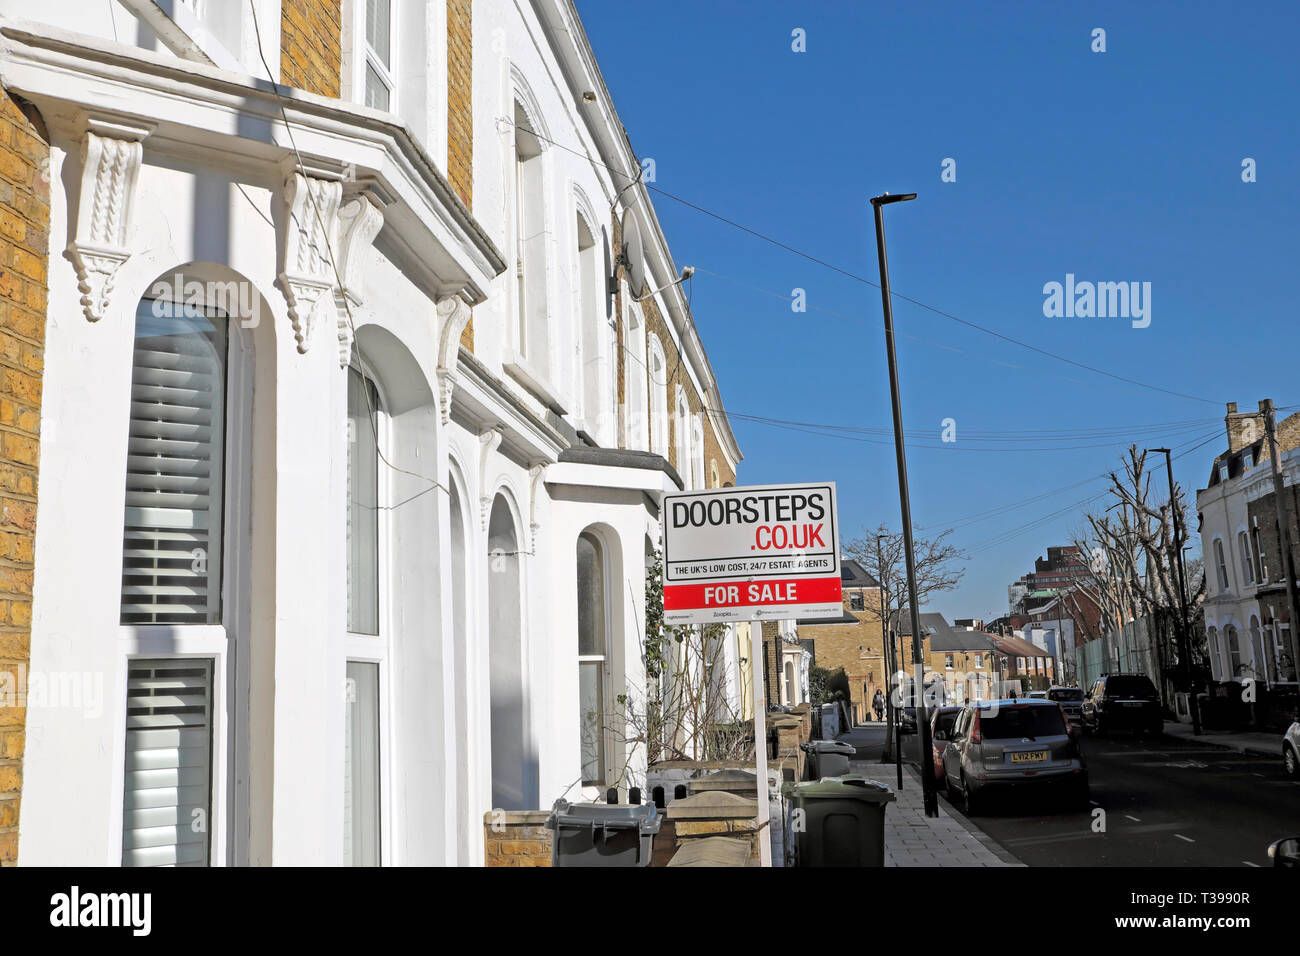 Maison à vendre signe à l'extérieur d'une maison dans une rangée de maisons mitoyennes sur Pulross Road à Brixton, sud de Londres SW9 Angleterre Royaume-Uni KATHY DEWITT DE WITT Banque D'Images